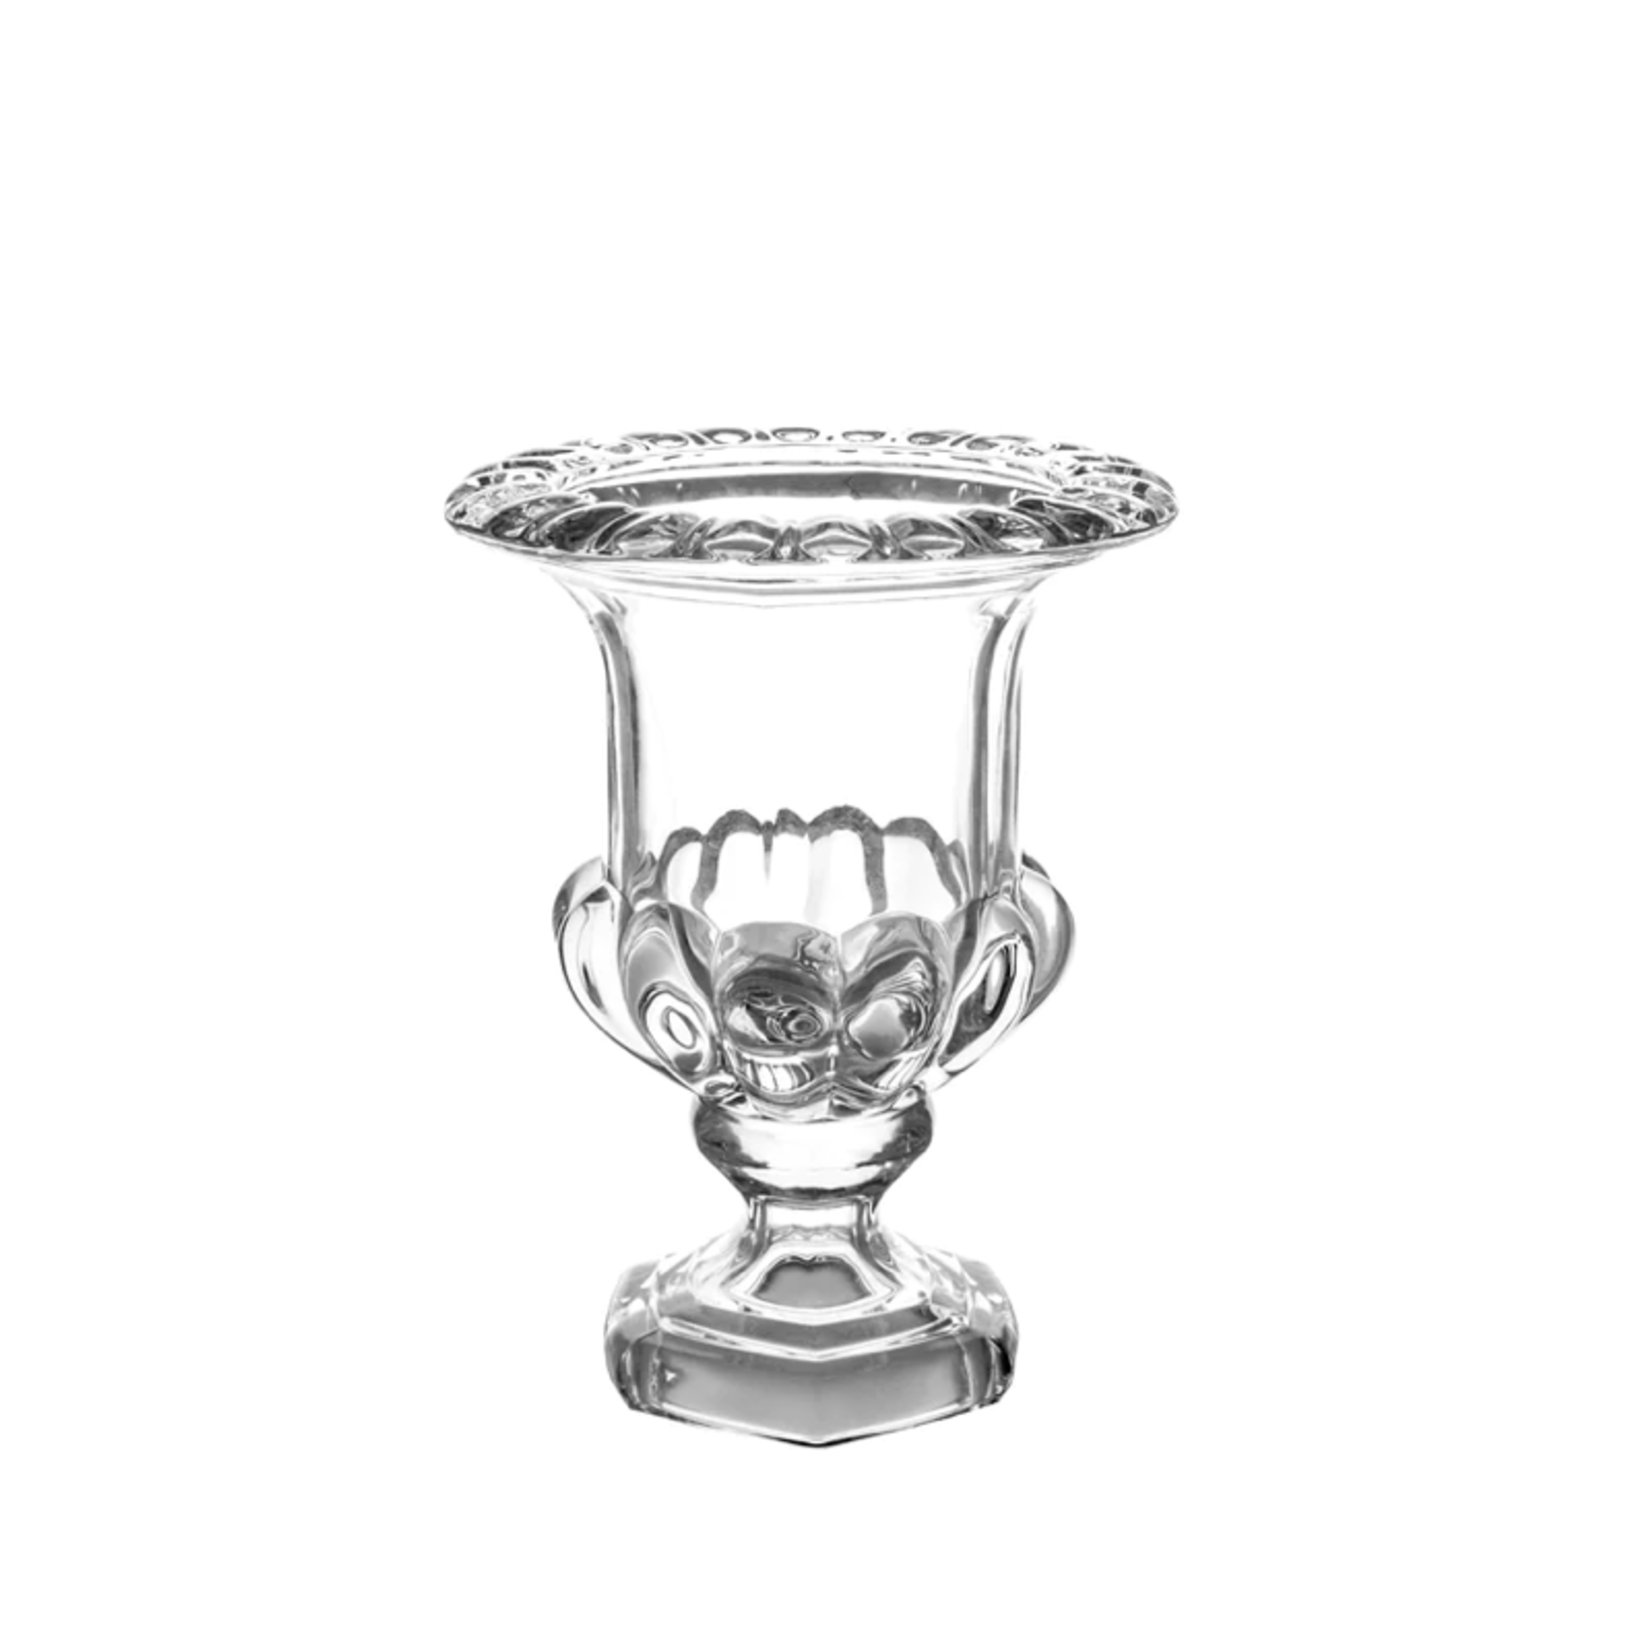 10.25”H X 8” THICK GLASS PEDESTAL